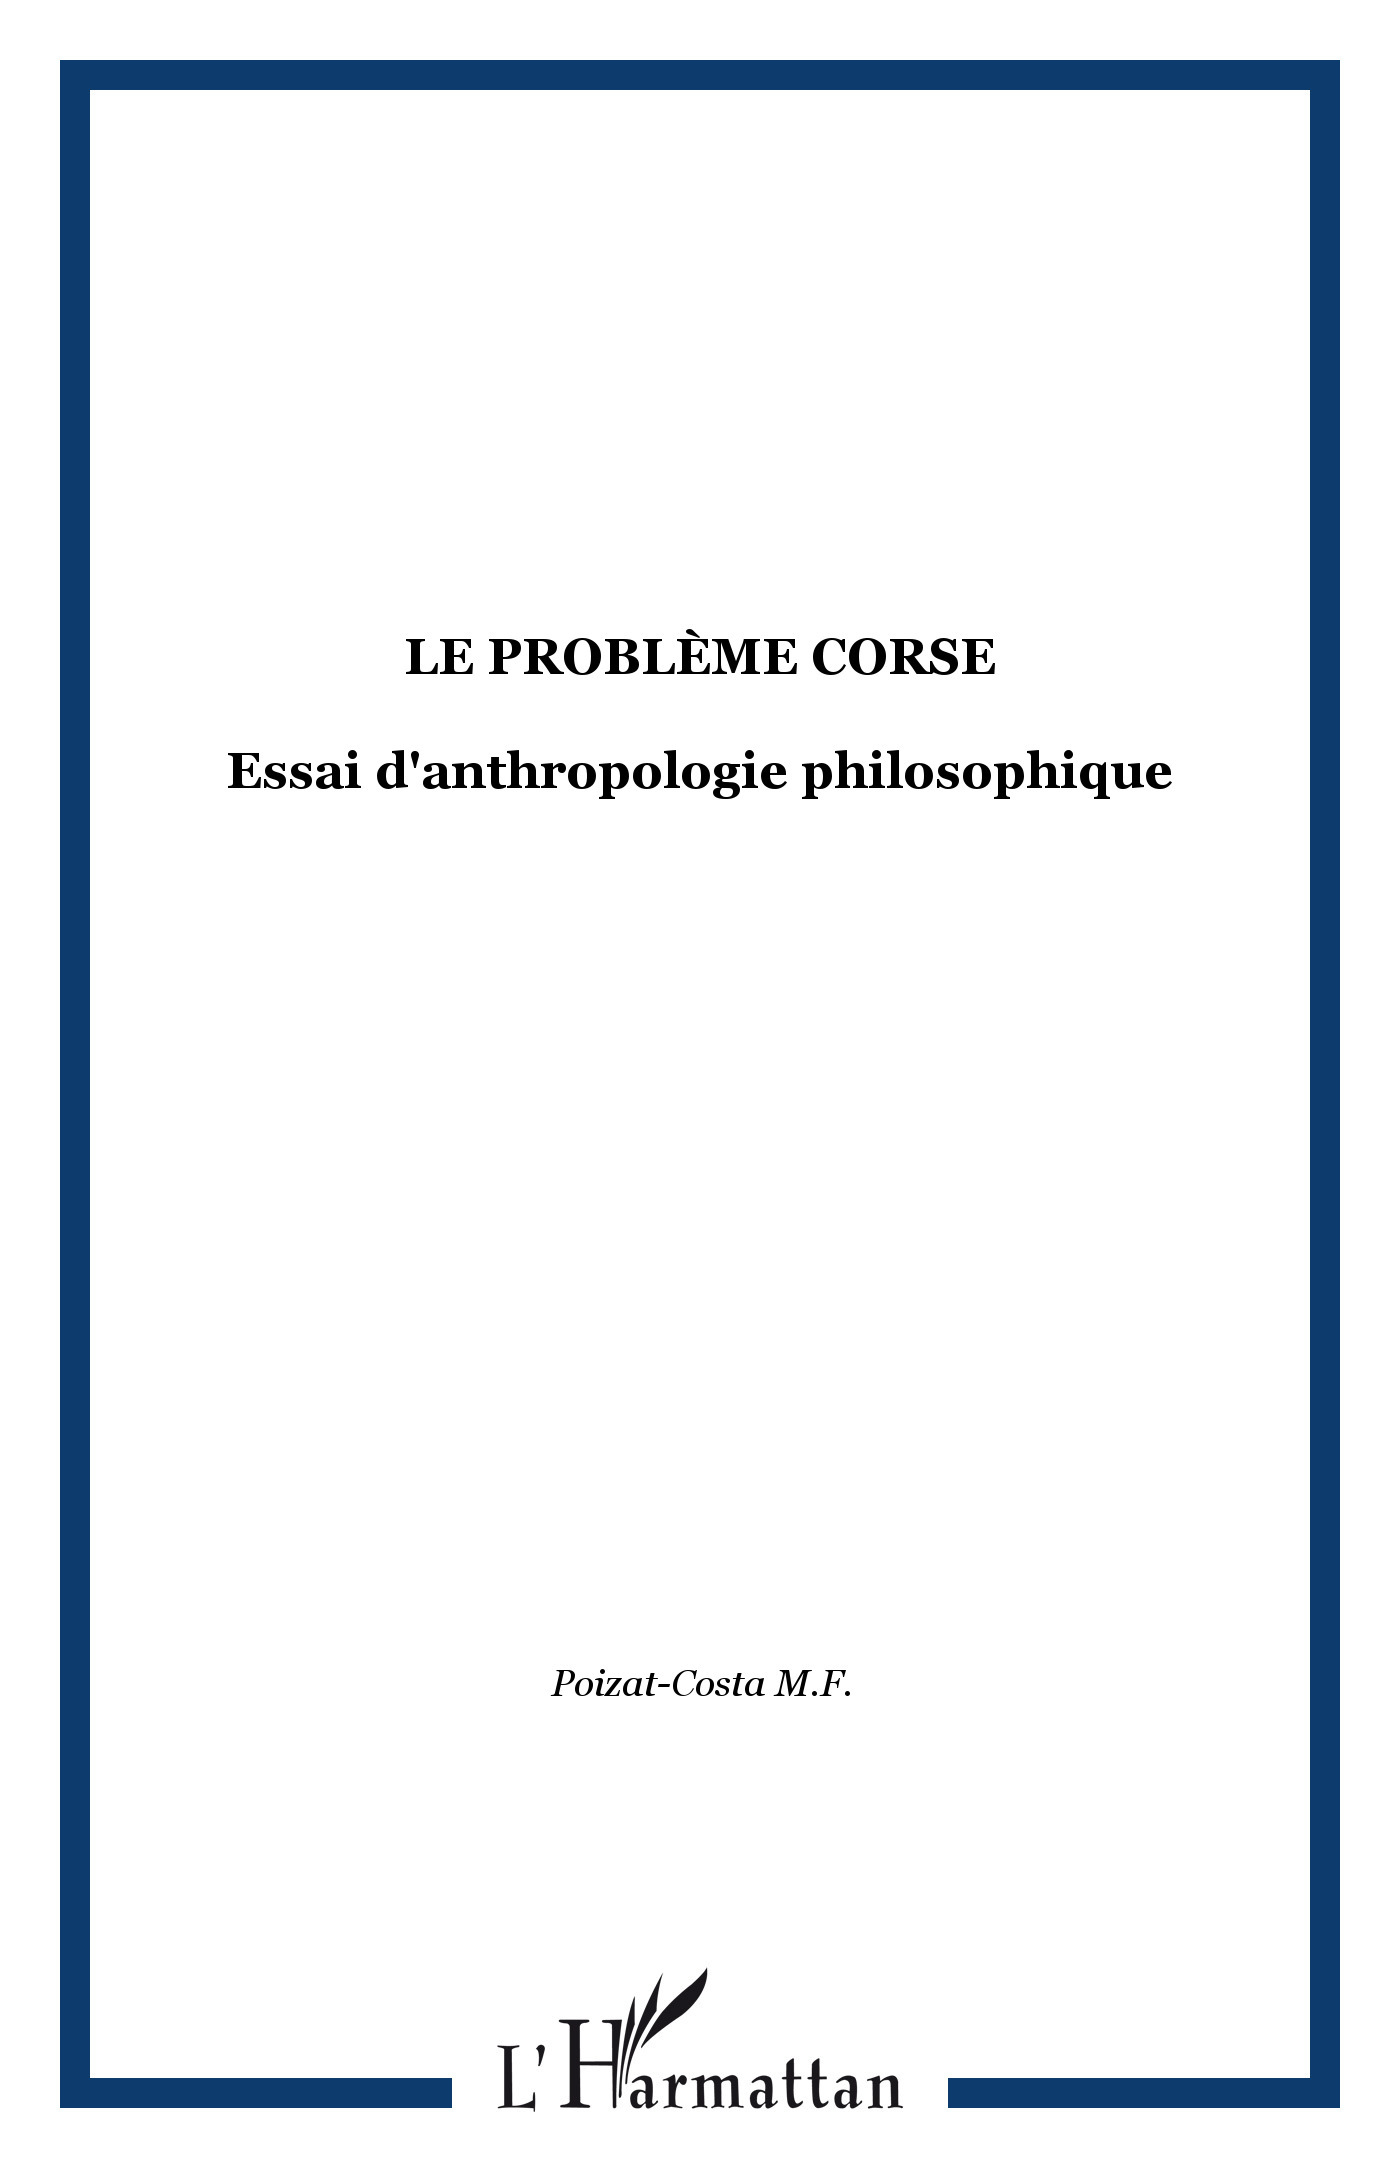 Le problème corse, Essai d'anthropologie philosophique (9782858027231-front-cover)